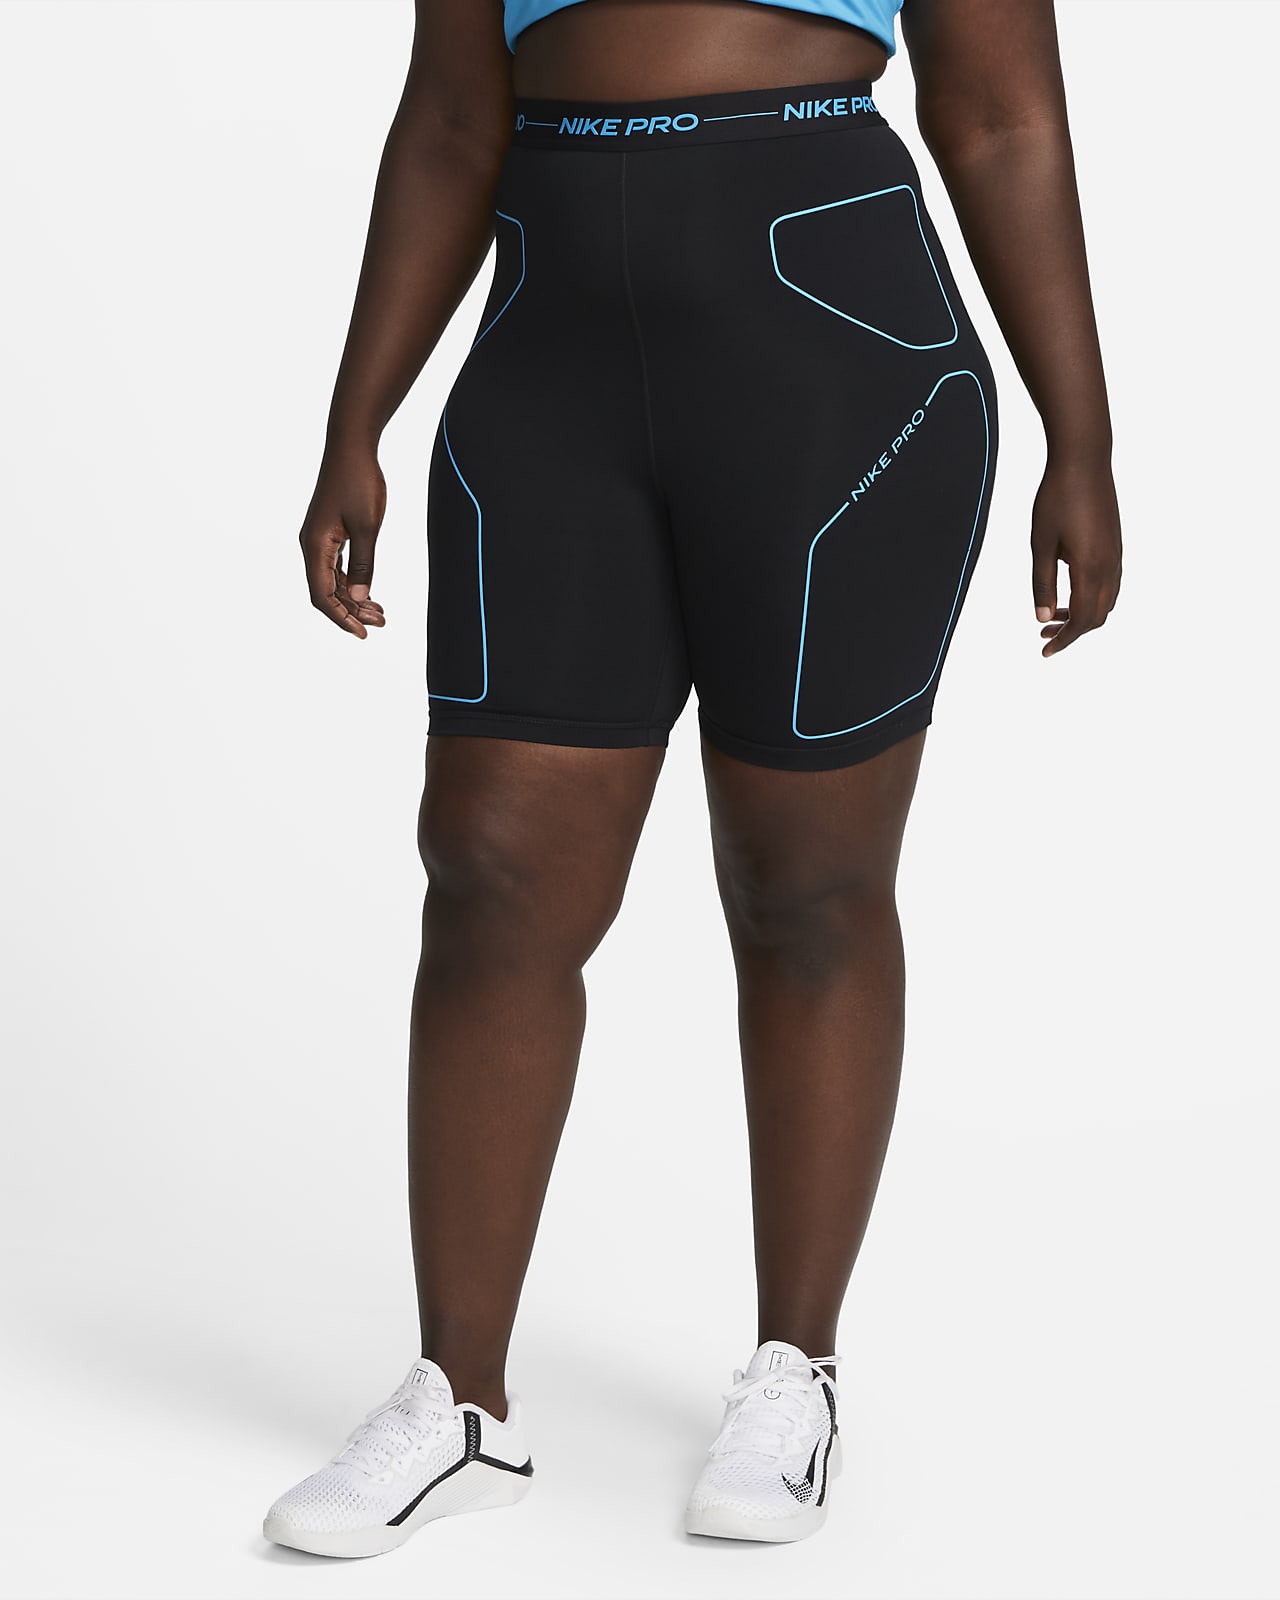 Manga Disfraces Gimnasio Nike Pro Women's 7" High-Rise Training Shorts (Plus Size). Nike.com